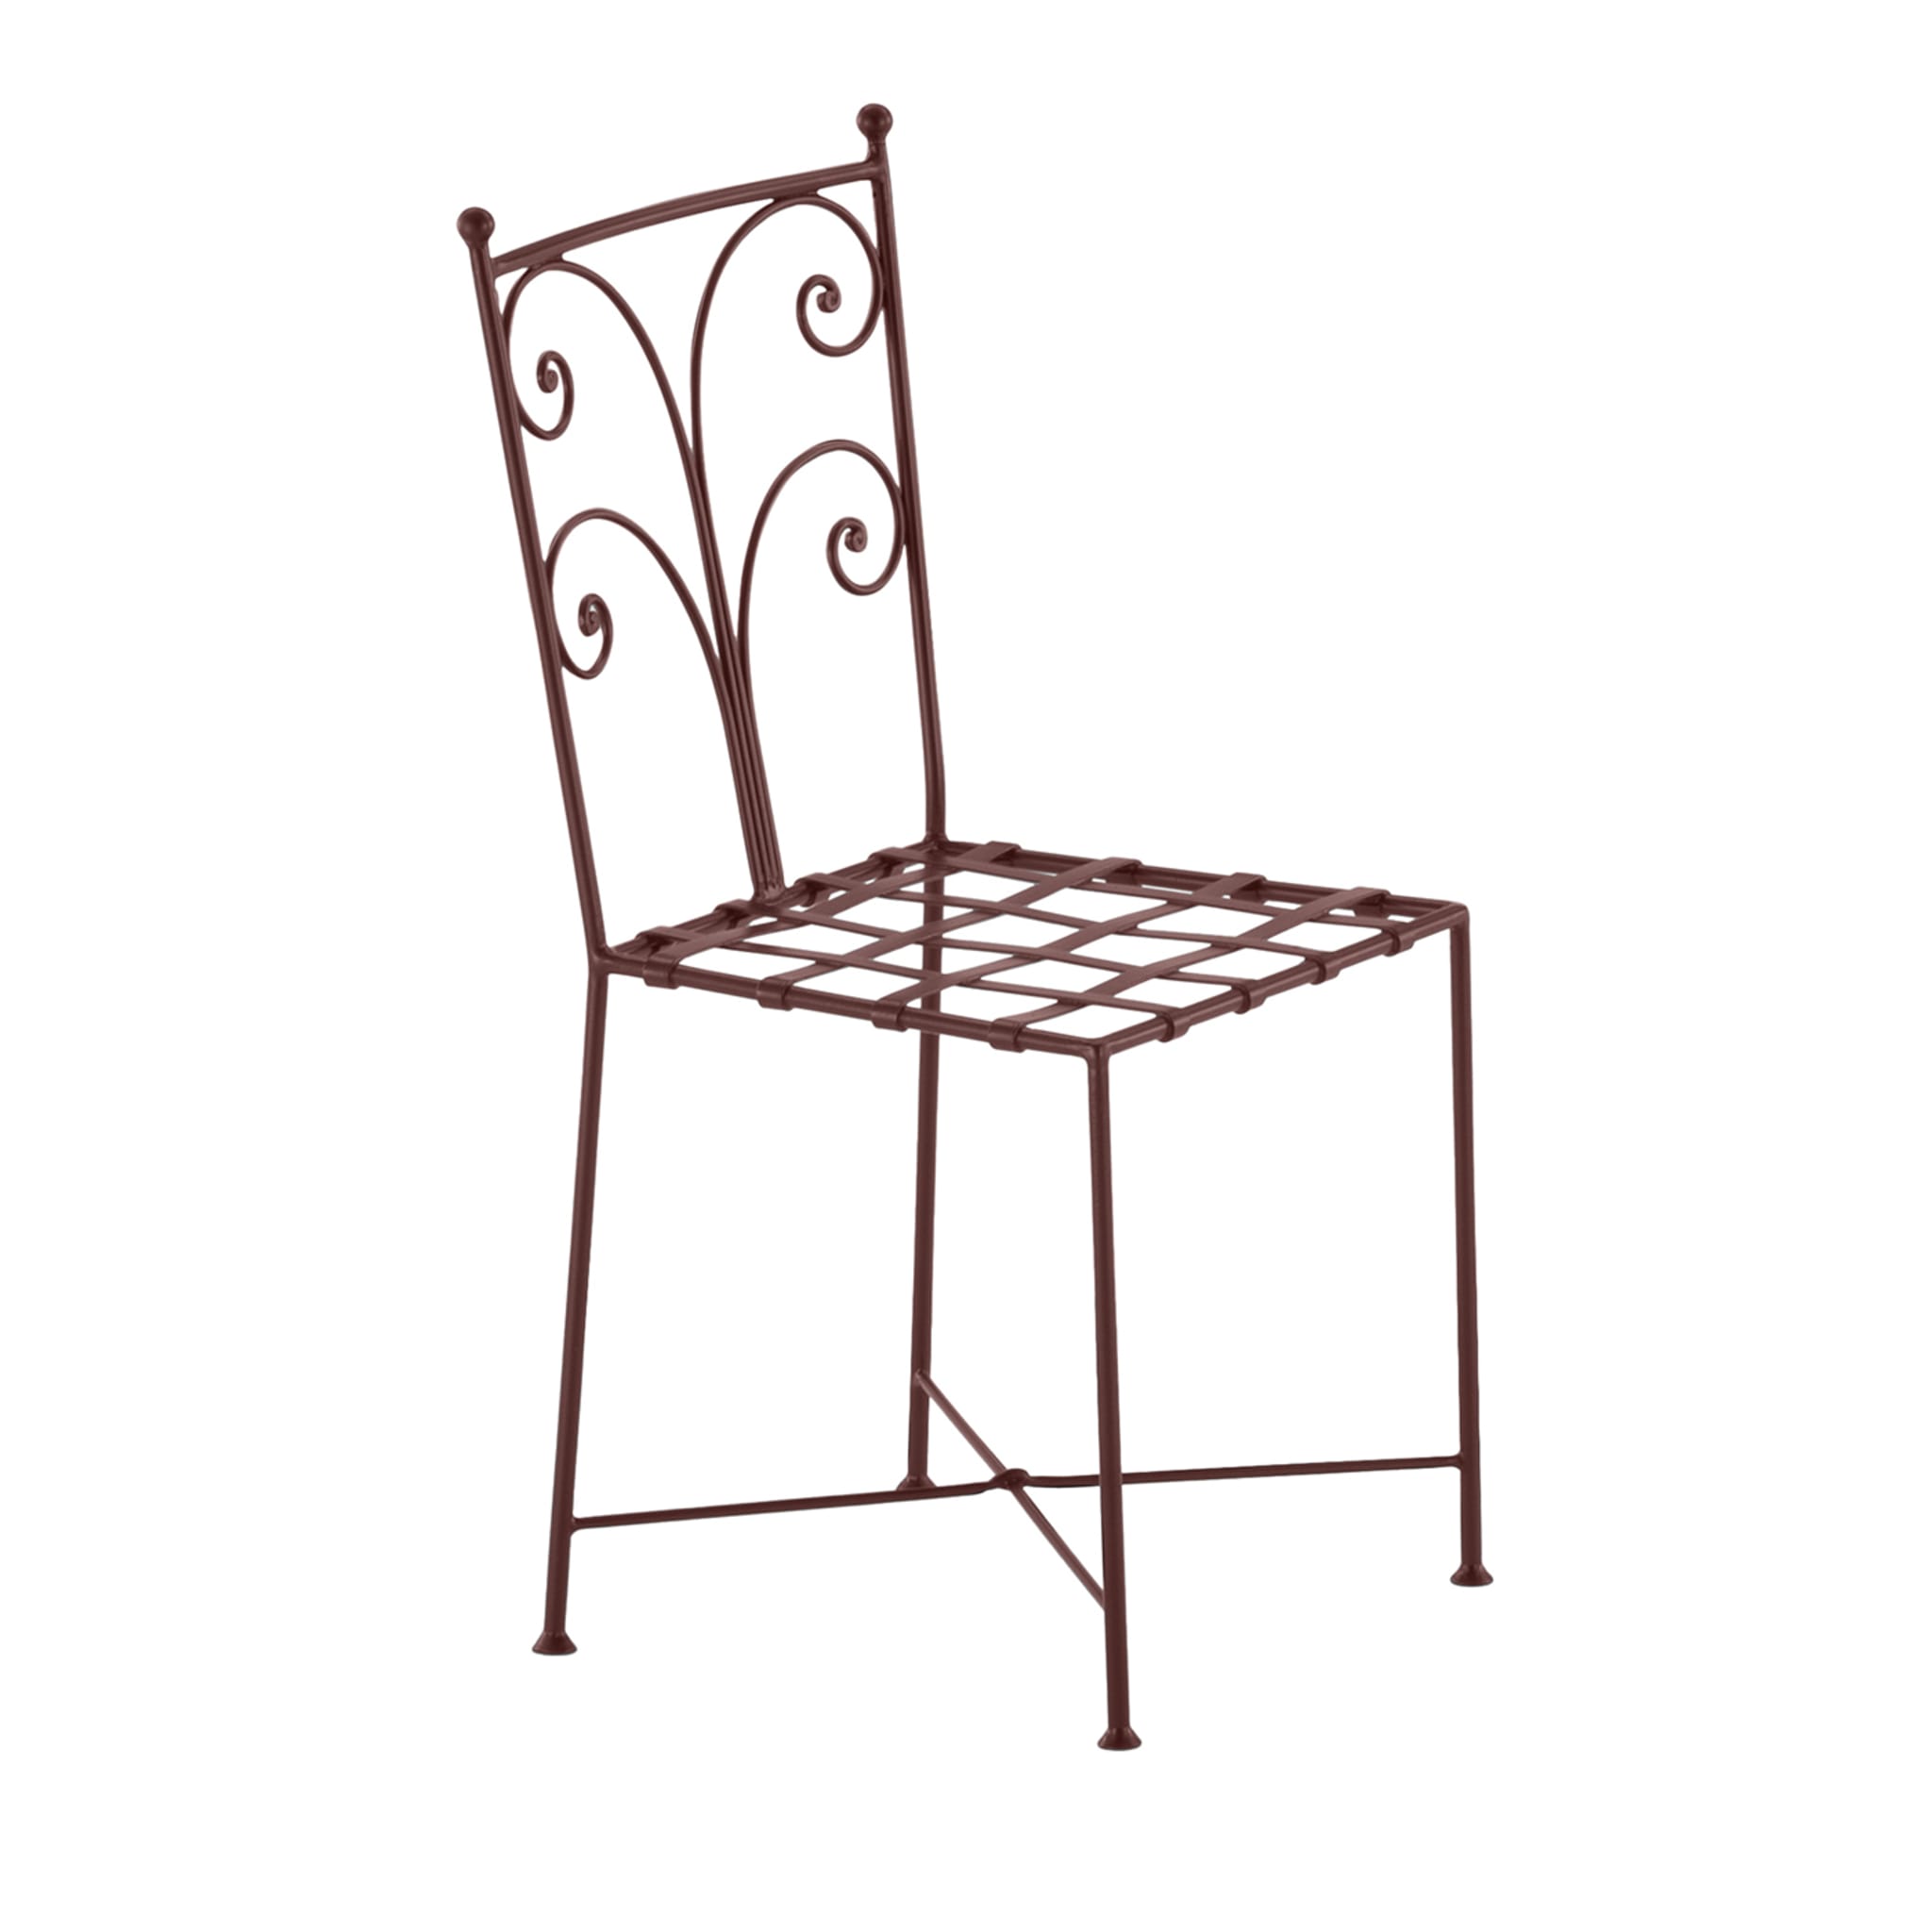 Acanta Wrought Iron Brown Chair - Main view